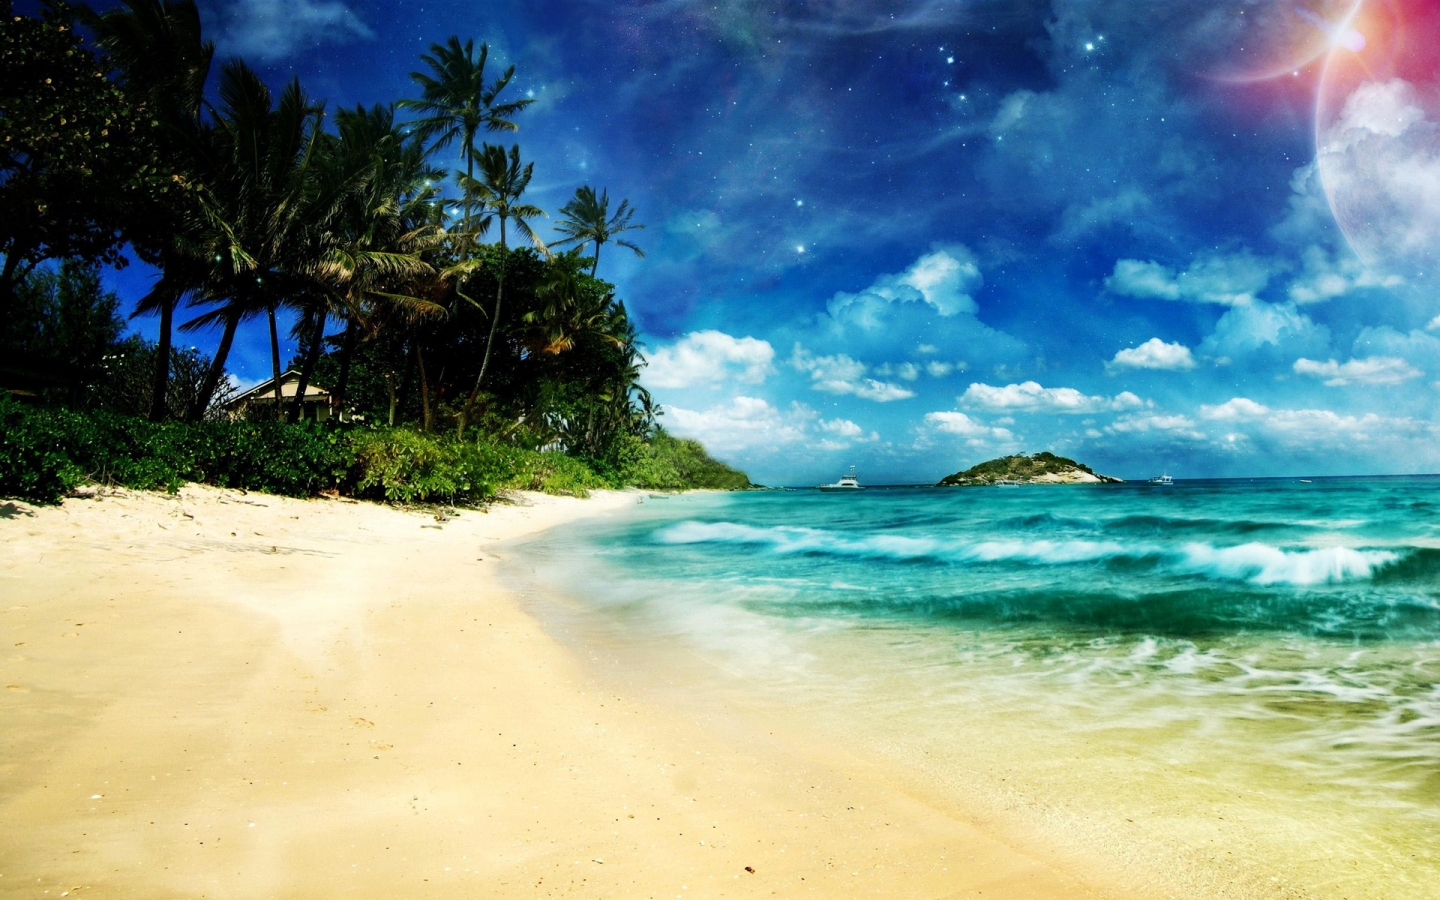 Superb Ocean Beach for 1440 x 900 widescreen resolution